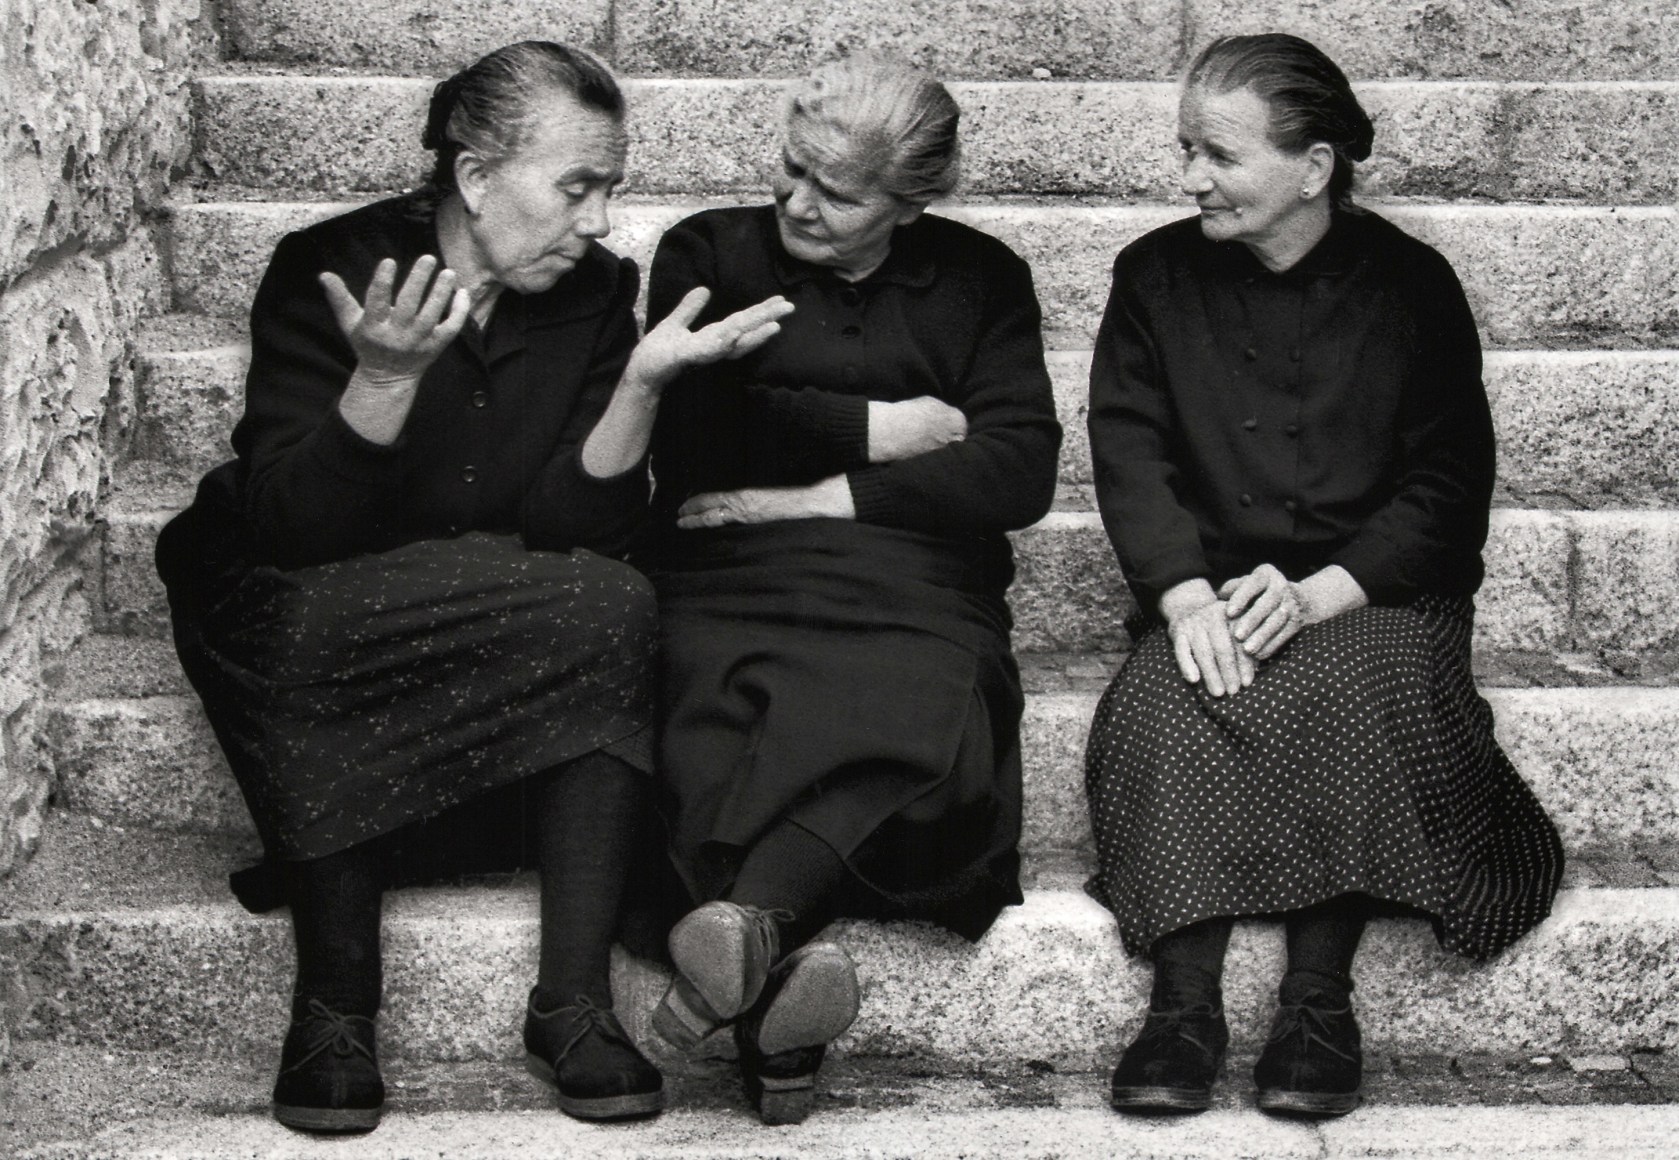 Nino Migliori, The Hands Speak, 1956. Three women sitting on stairs chatting.